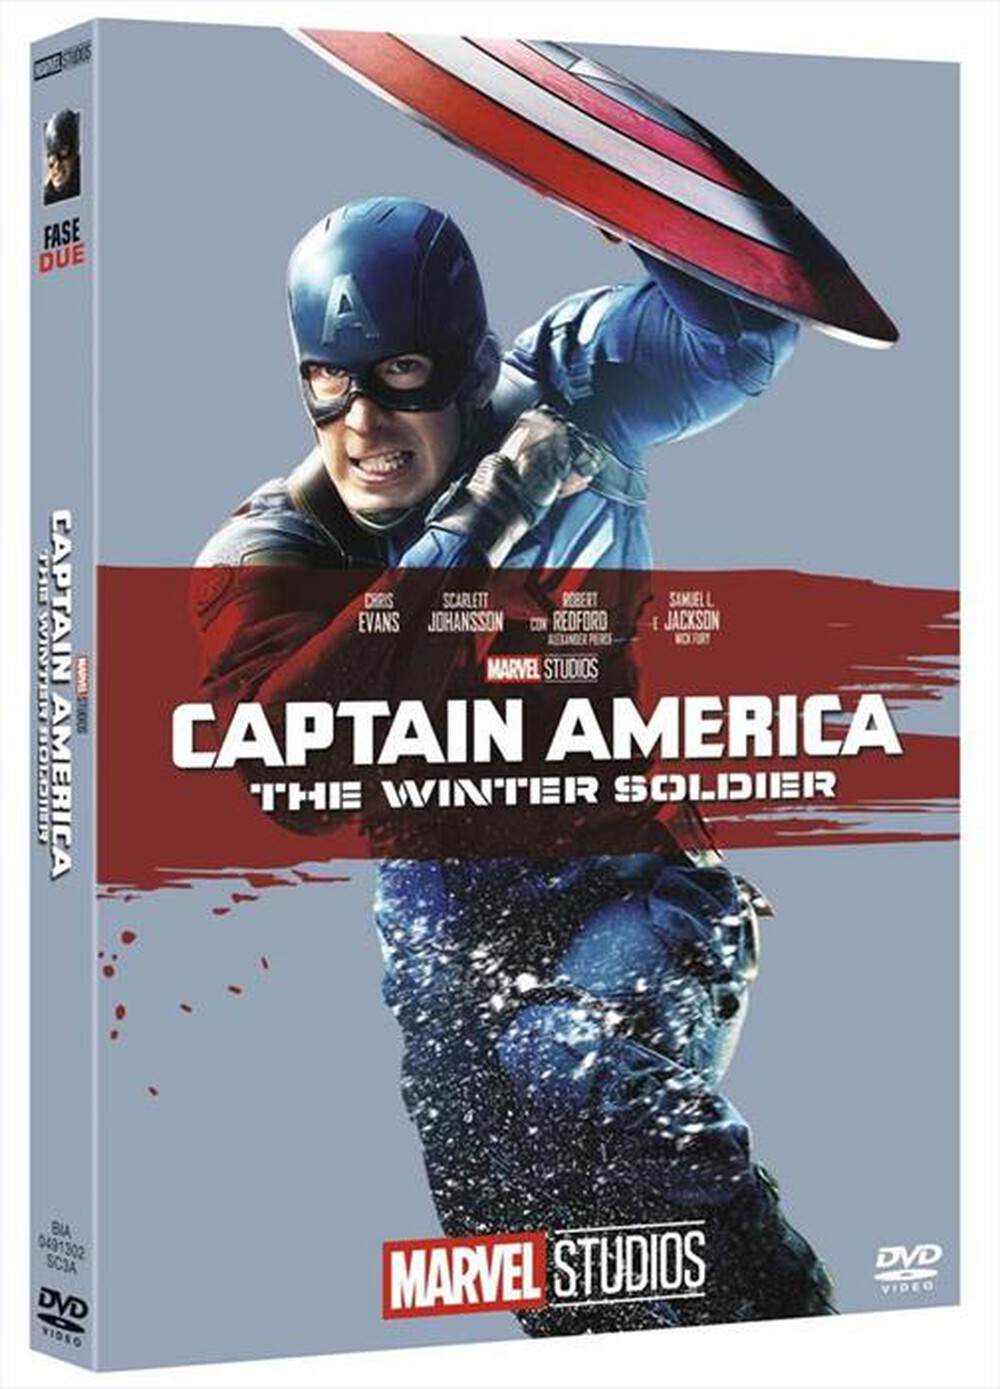 "EAGLE PICTURES - Captain America - The Winter Soldier (Edizione M"